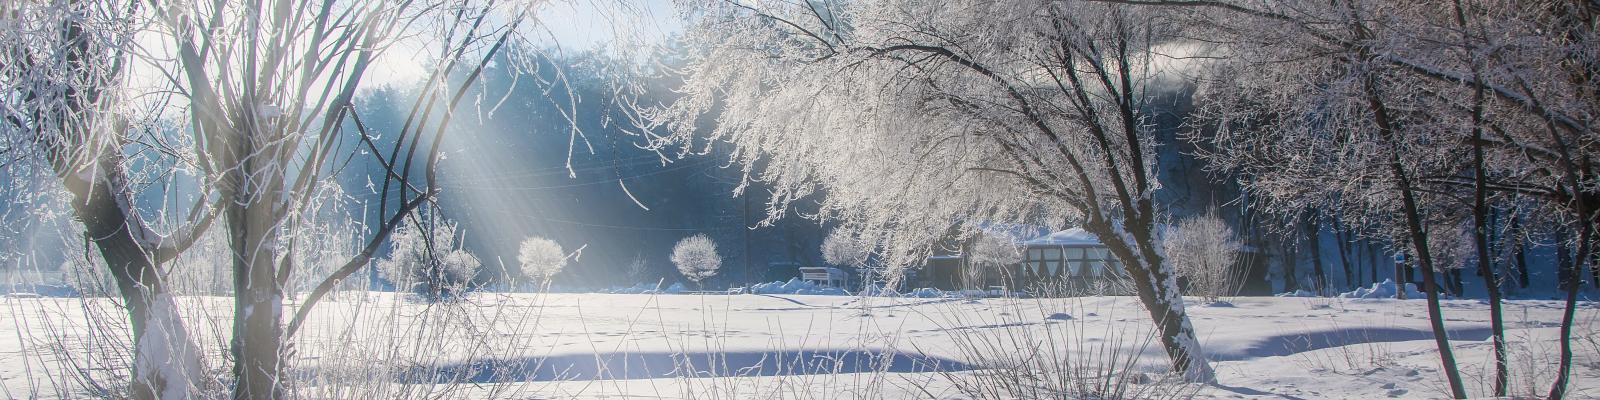 Panoramablick über weiße, schneebedeckte Landschaft: im Vordergrund kahle, von Frost bedeckte Bäumen auf einer verschneiten Wiese, im Hintergrund schneebedeckte Gebäude, einzelne kahle Bäume am Rand eines Waldes mit dichtem Baumbewuchs, blauer Himmel mit strahlender Sonne